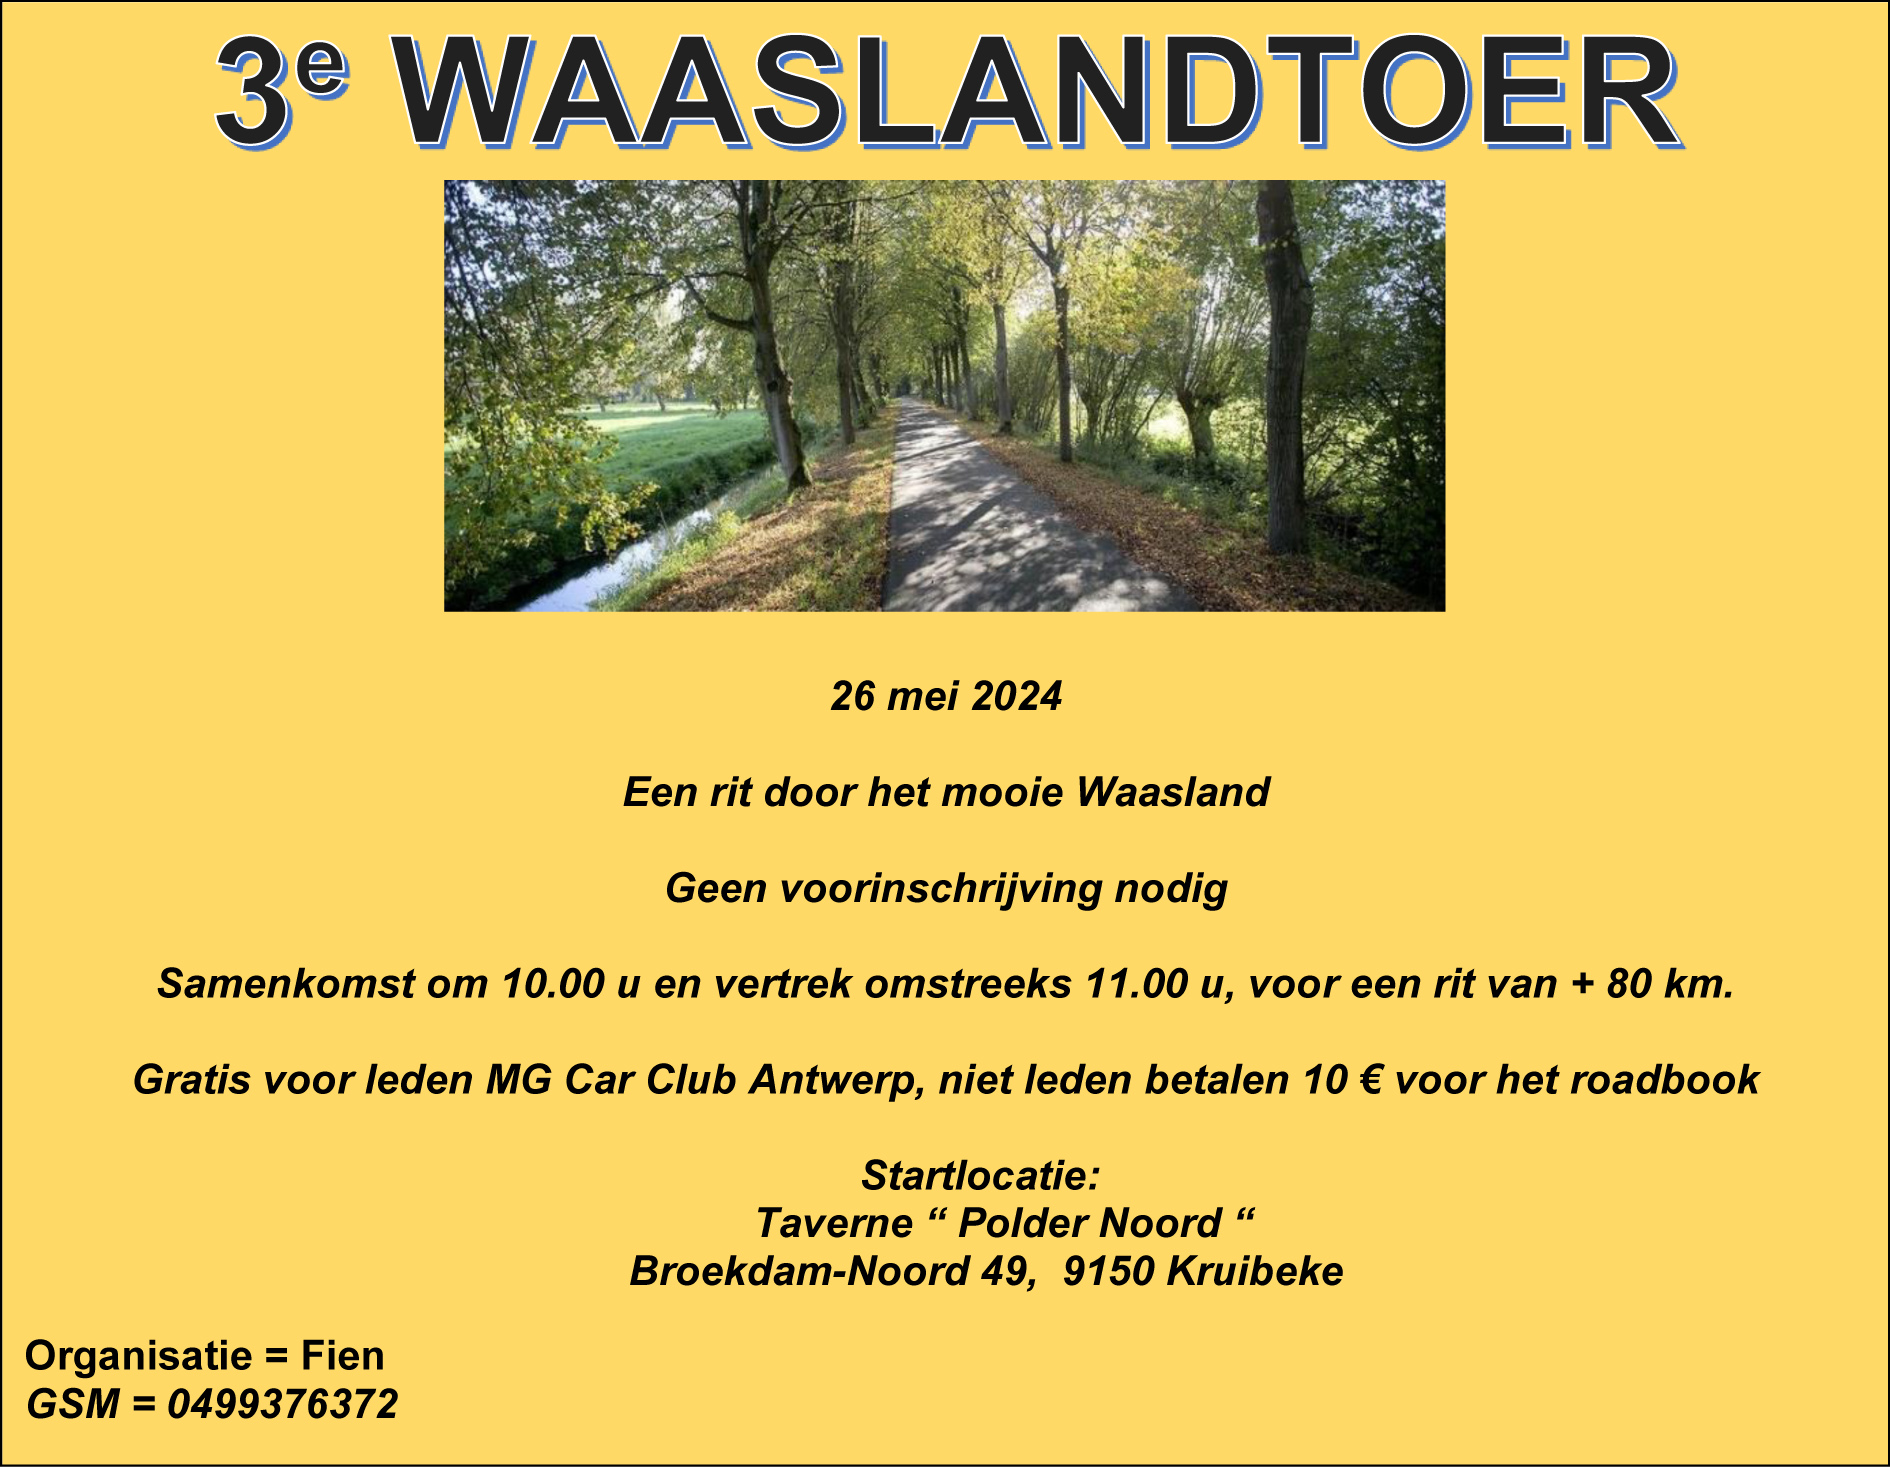 Waaslandtour